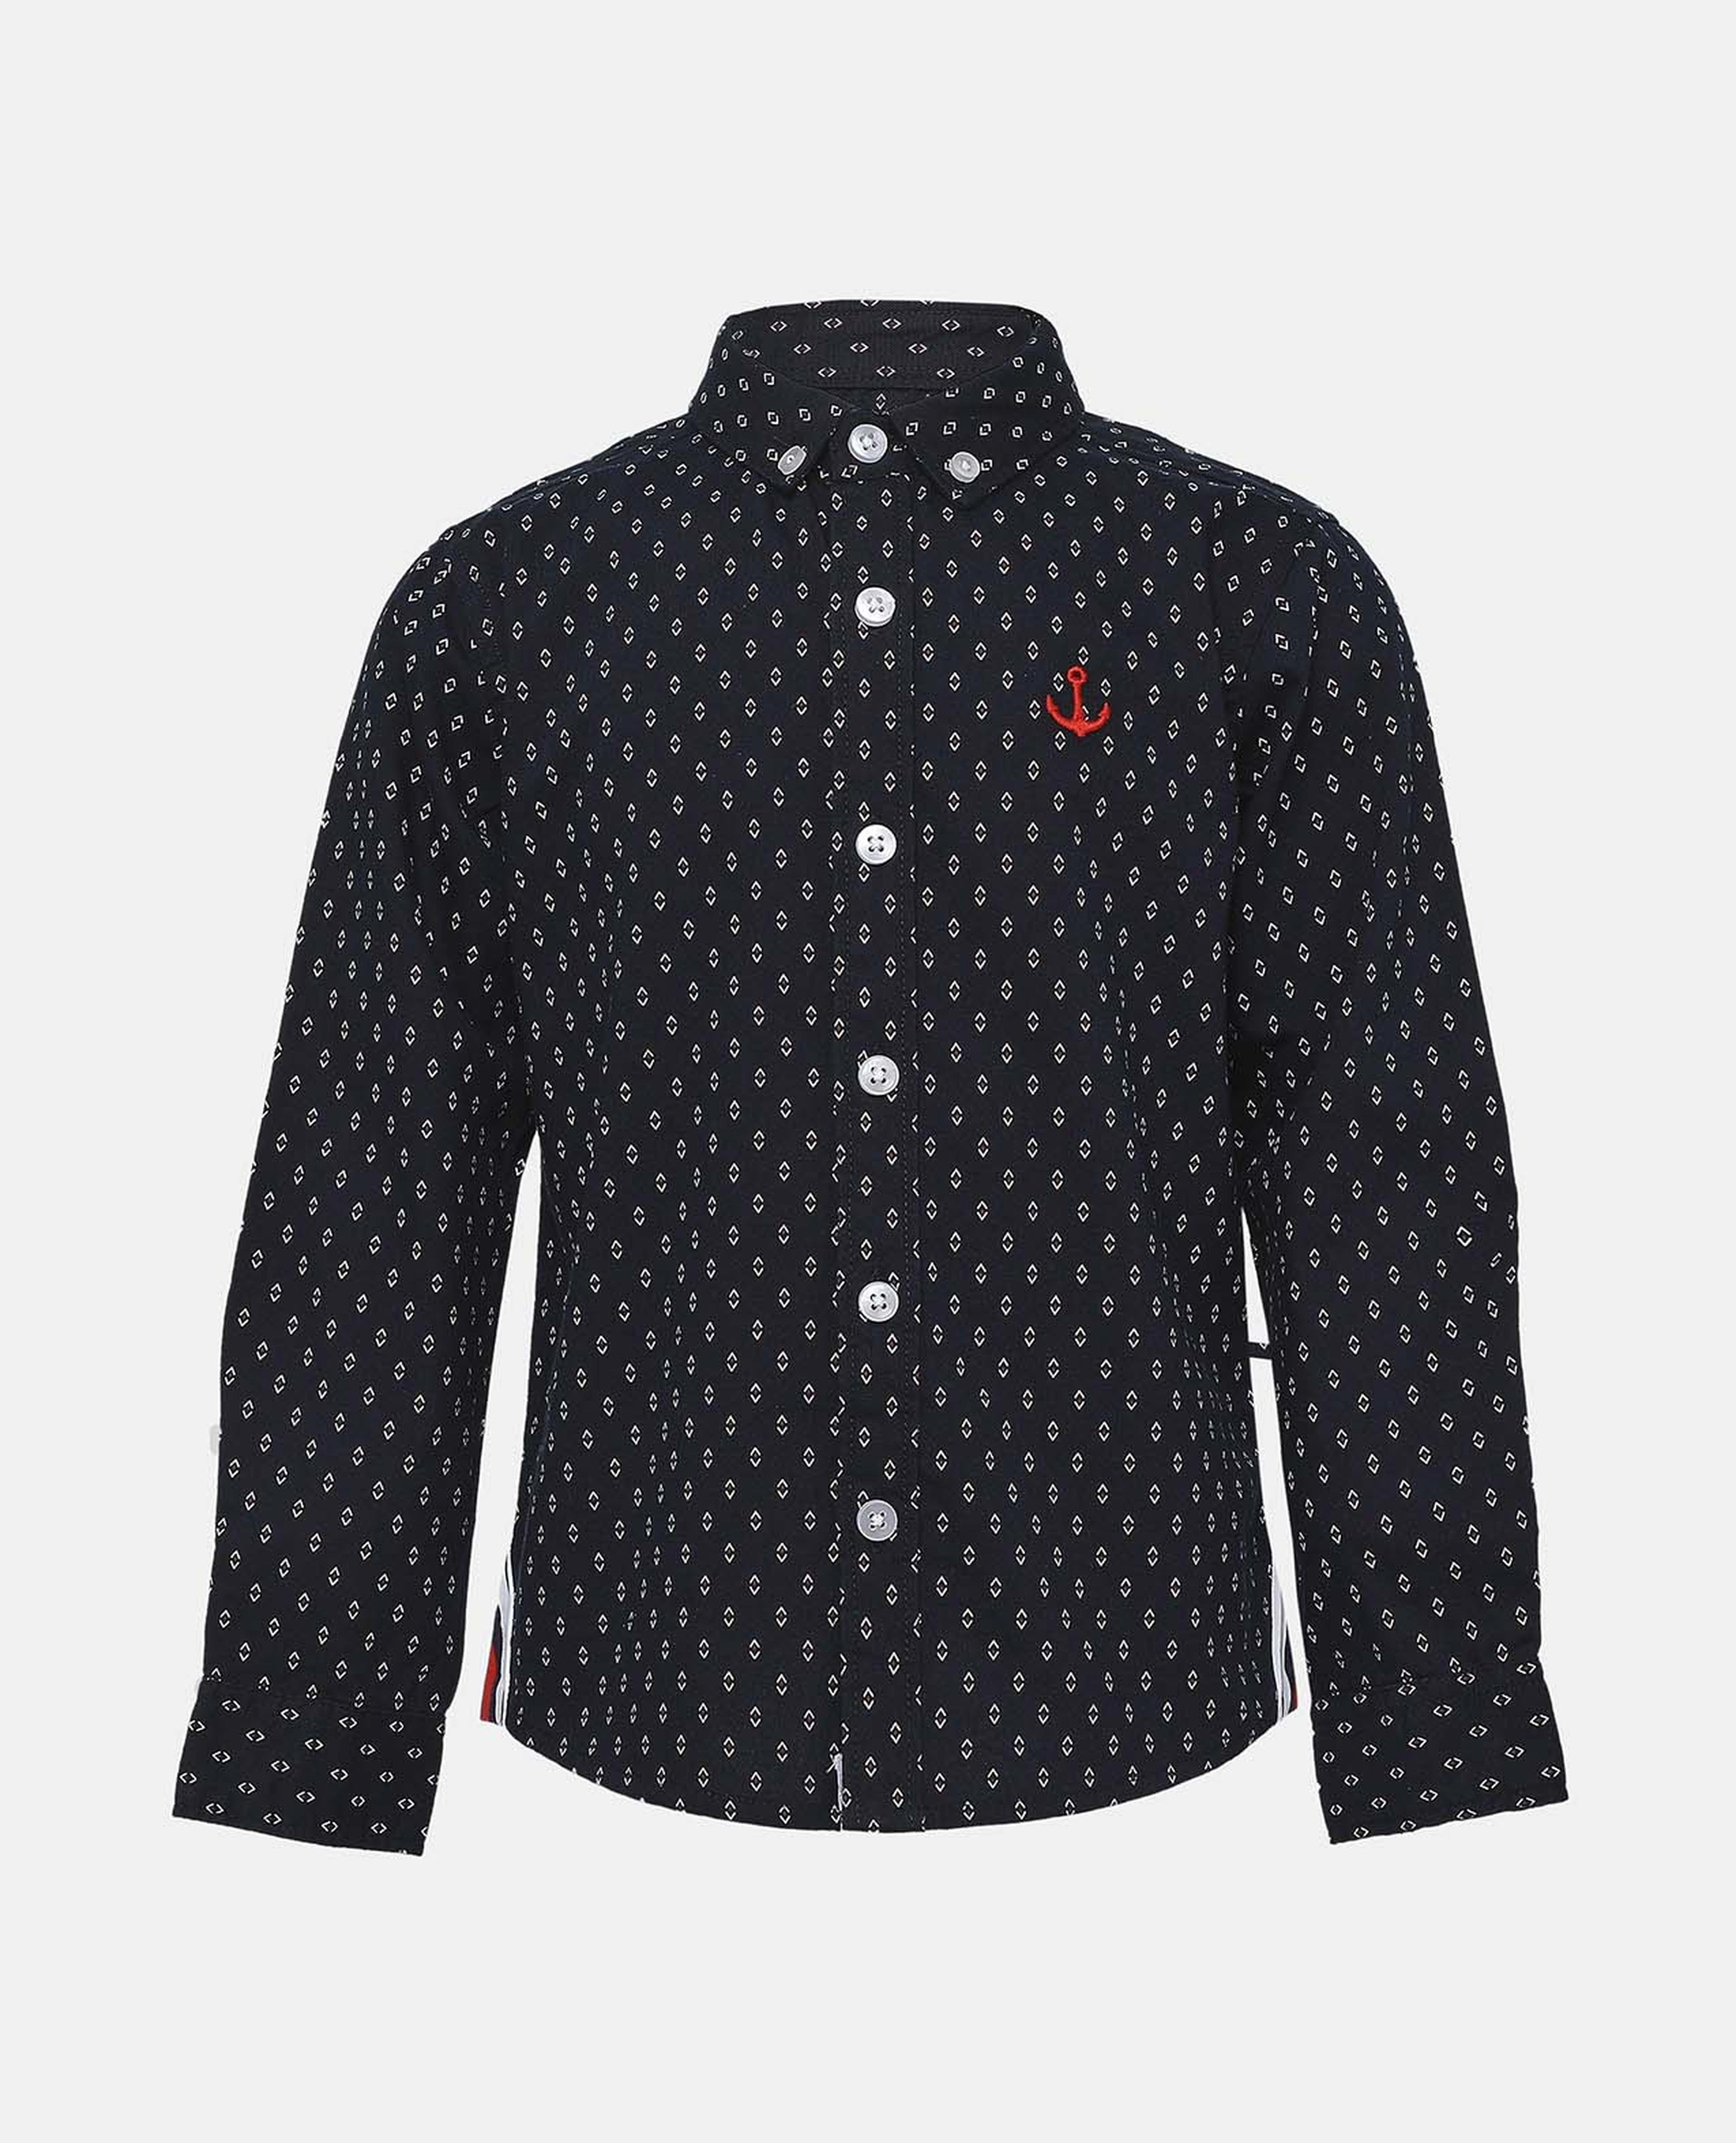 Polka Dot Shirt with Stand Collar Long Sleeve